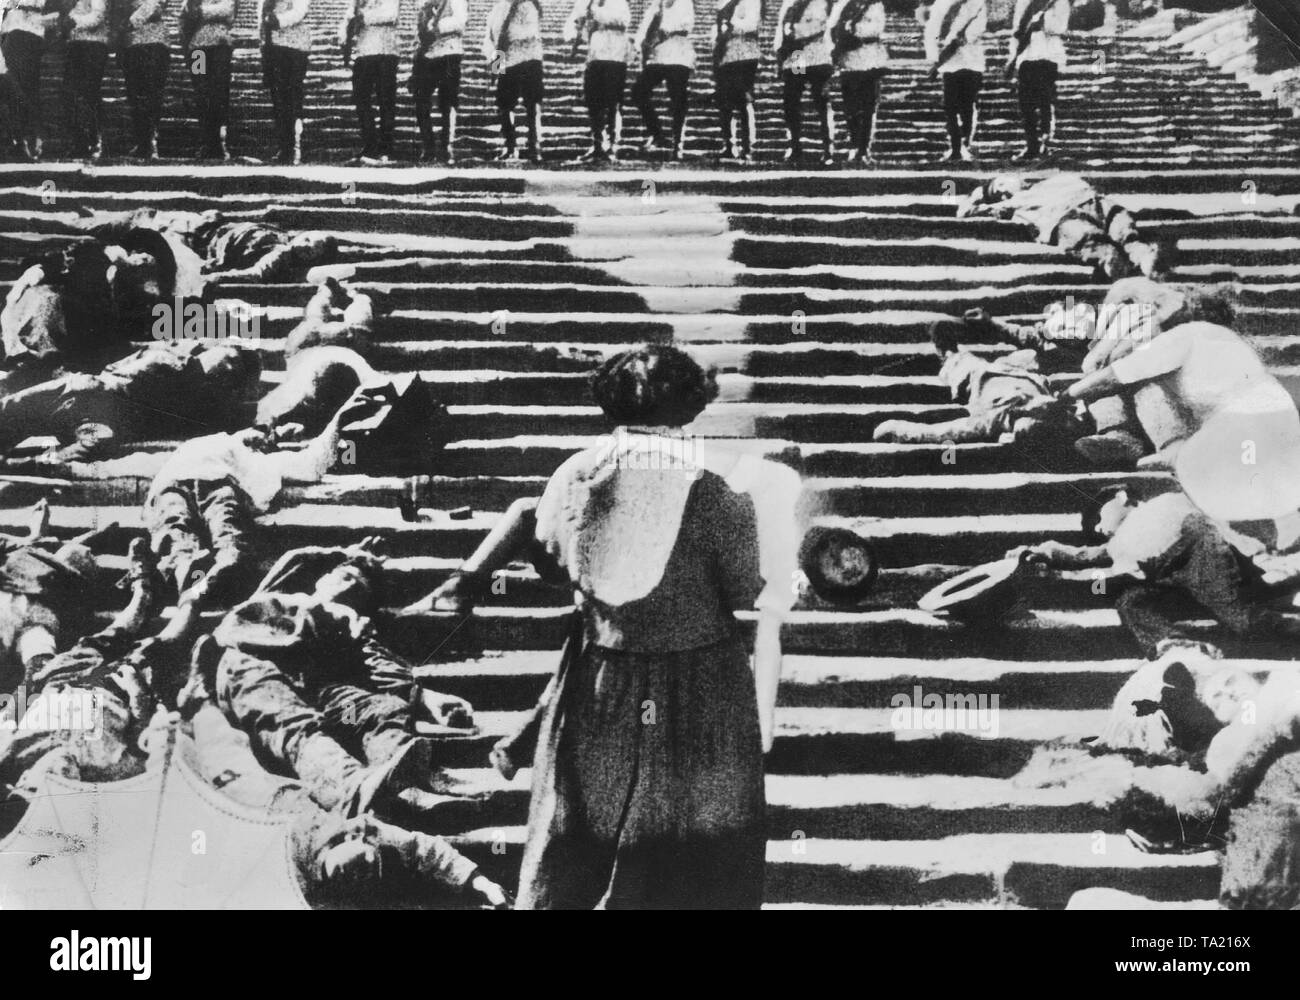 Szene aus dem Film "Panzerkreuzer Potemkin" von Sergej Eisenstein im Jahre 1925. Eisenstein erzählt die Geschichte des Matrosen Meuterei auf dem Schlachtschiff während der Russischen Revolution von 1905. Stockfoto